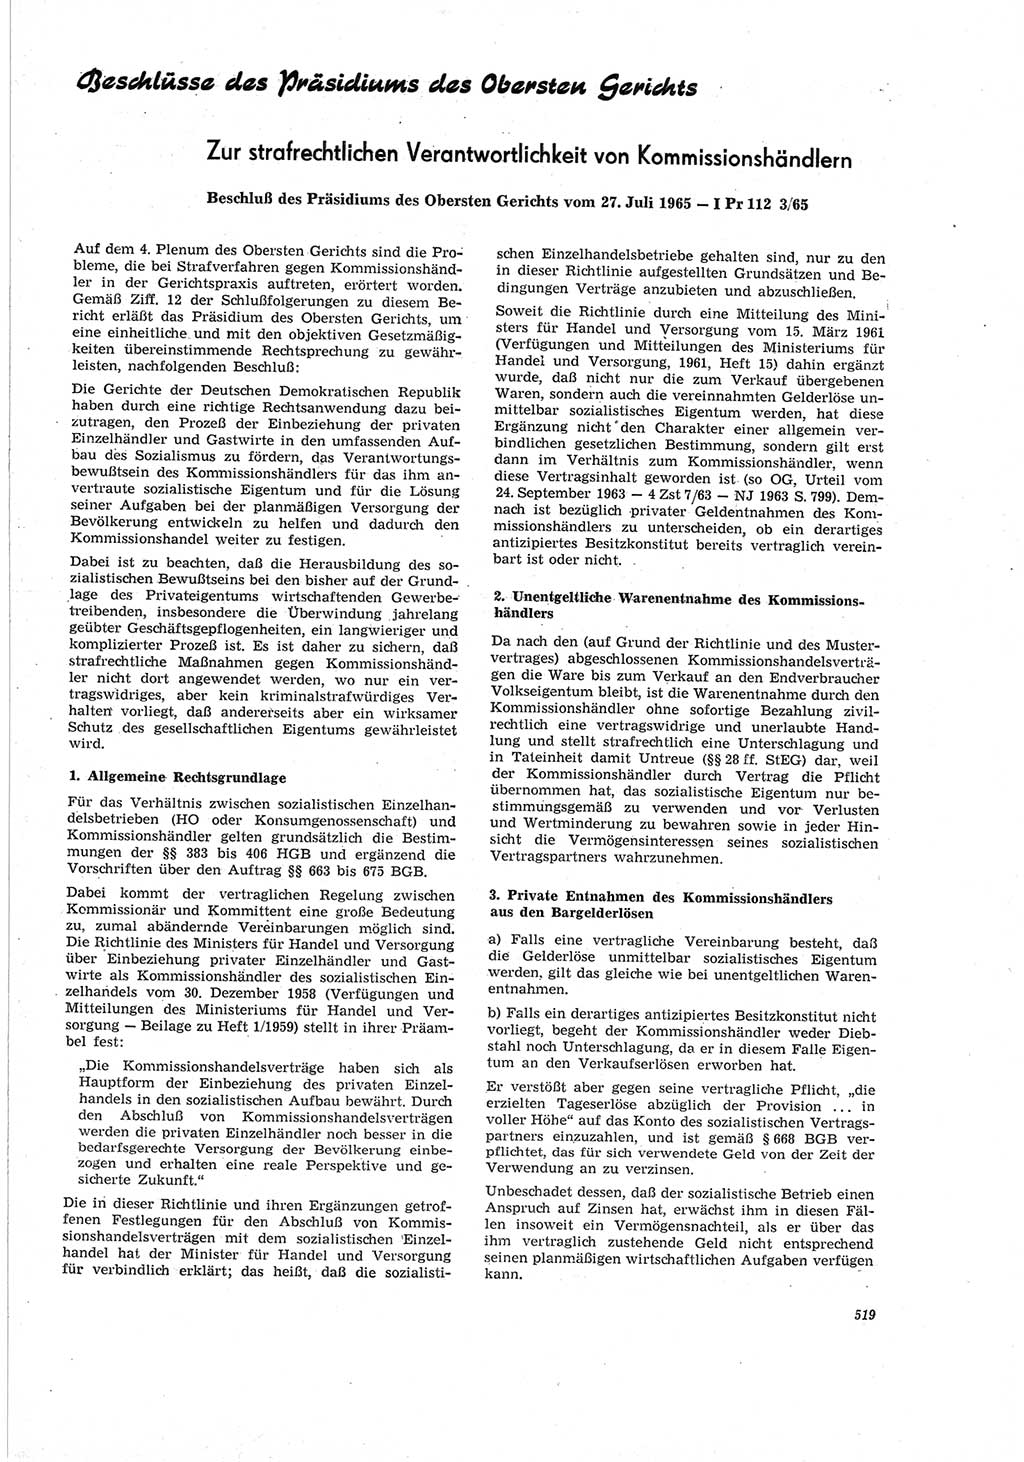 Neue Justiz (NJ), Zeitschrift für Recht und Rechtswissenschaft [Deutsche Demokratische Republik (DDR)], 19. Jahrgang 1965, Seite 519 (NJ DDR 1965, S. 519)